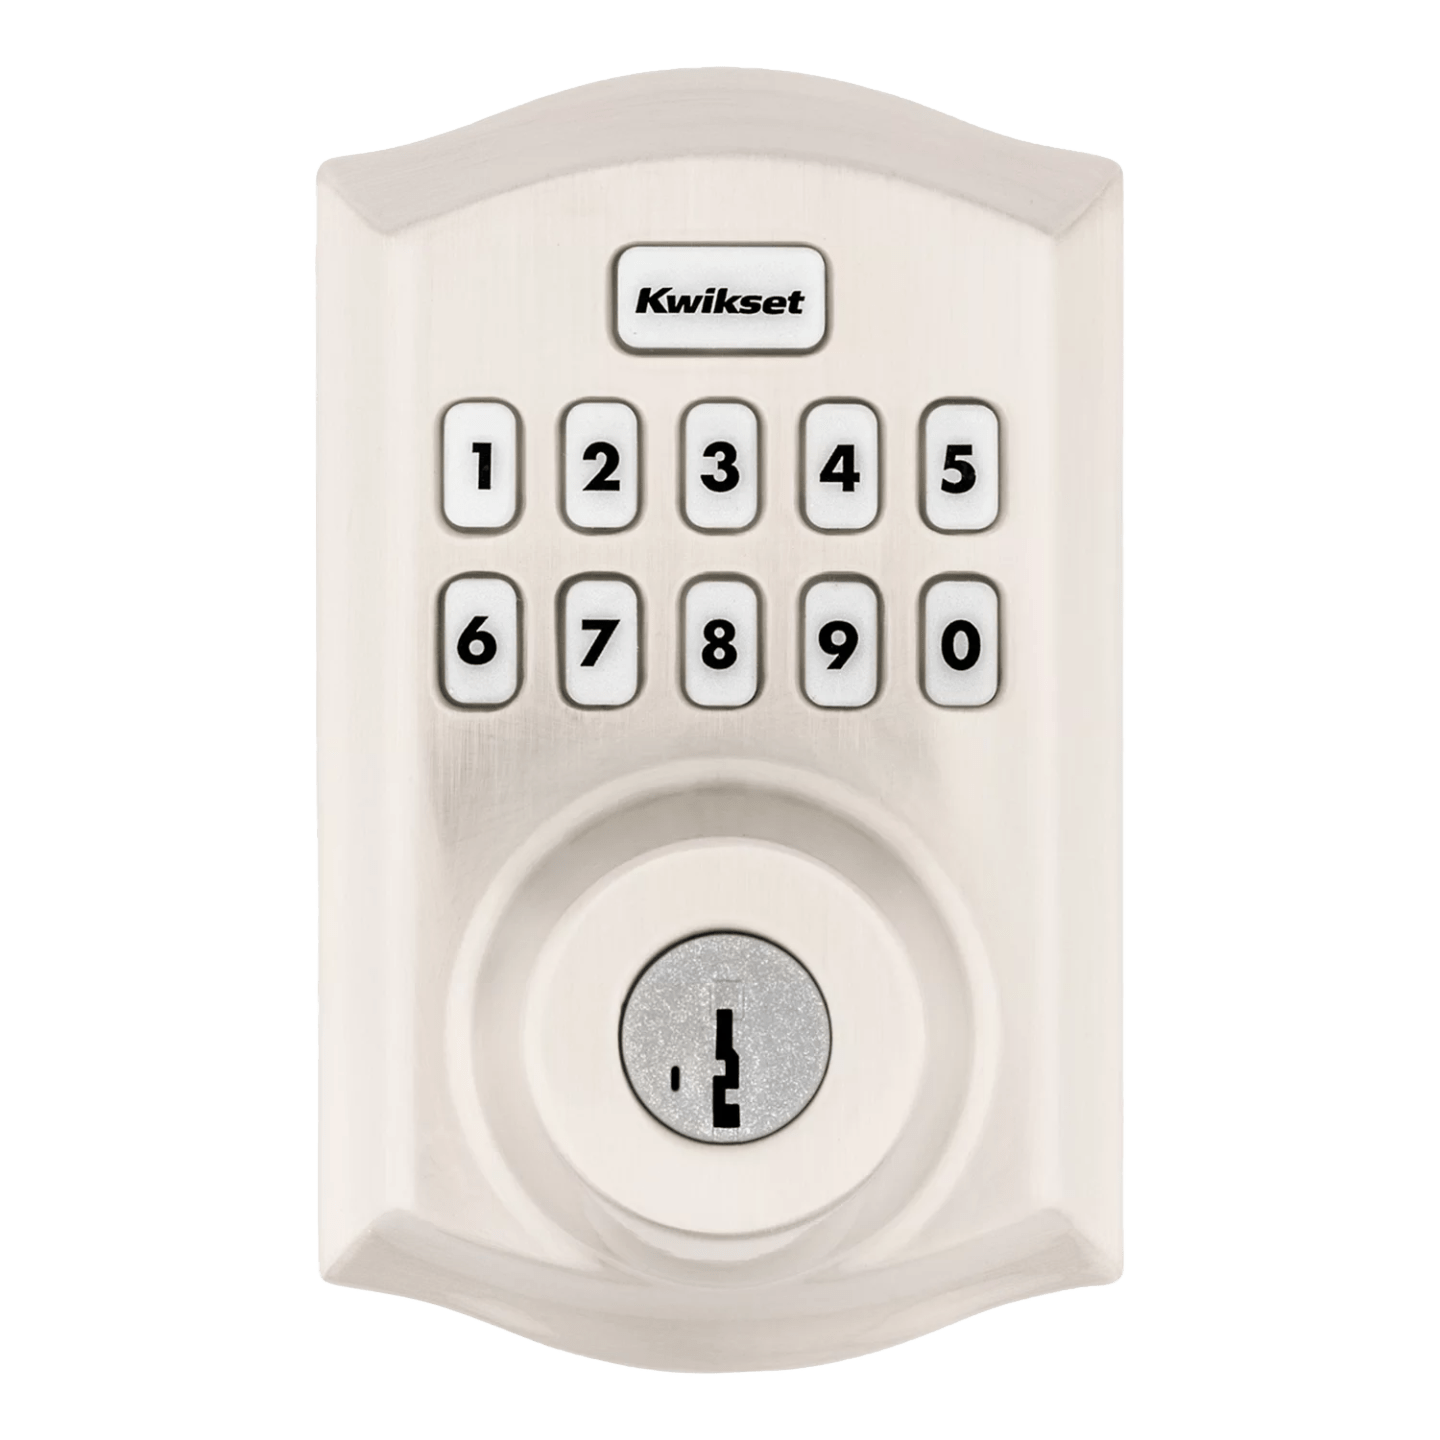 Guardian Protection's Smart Door lock